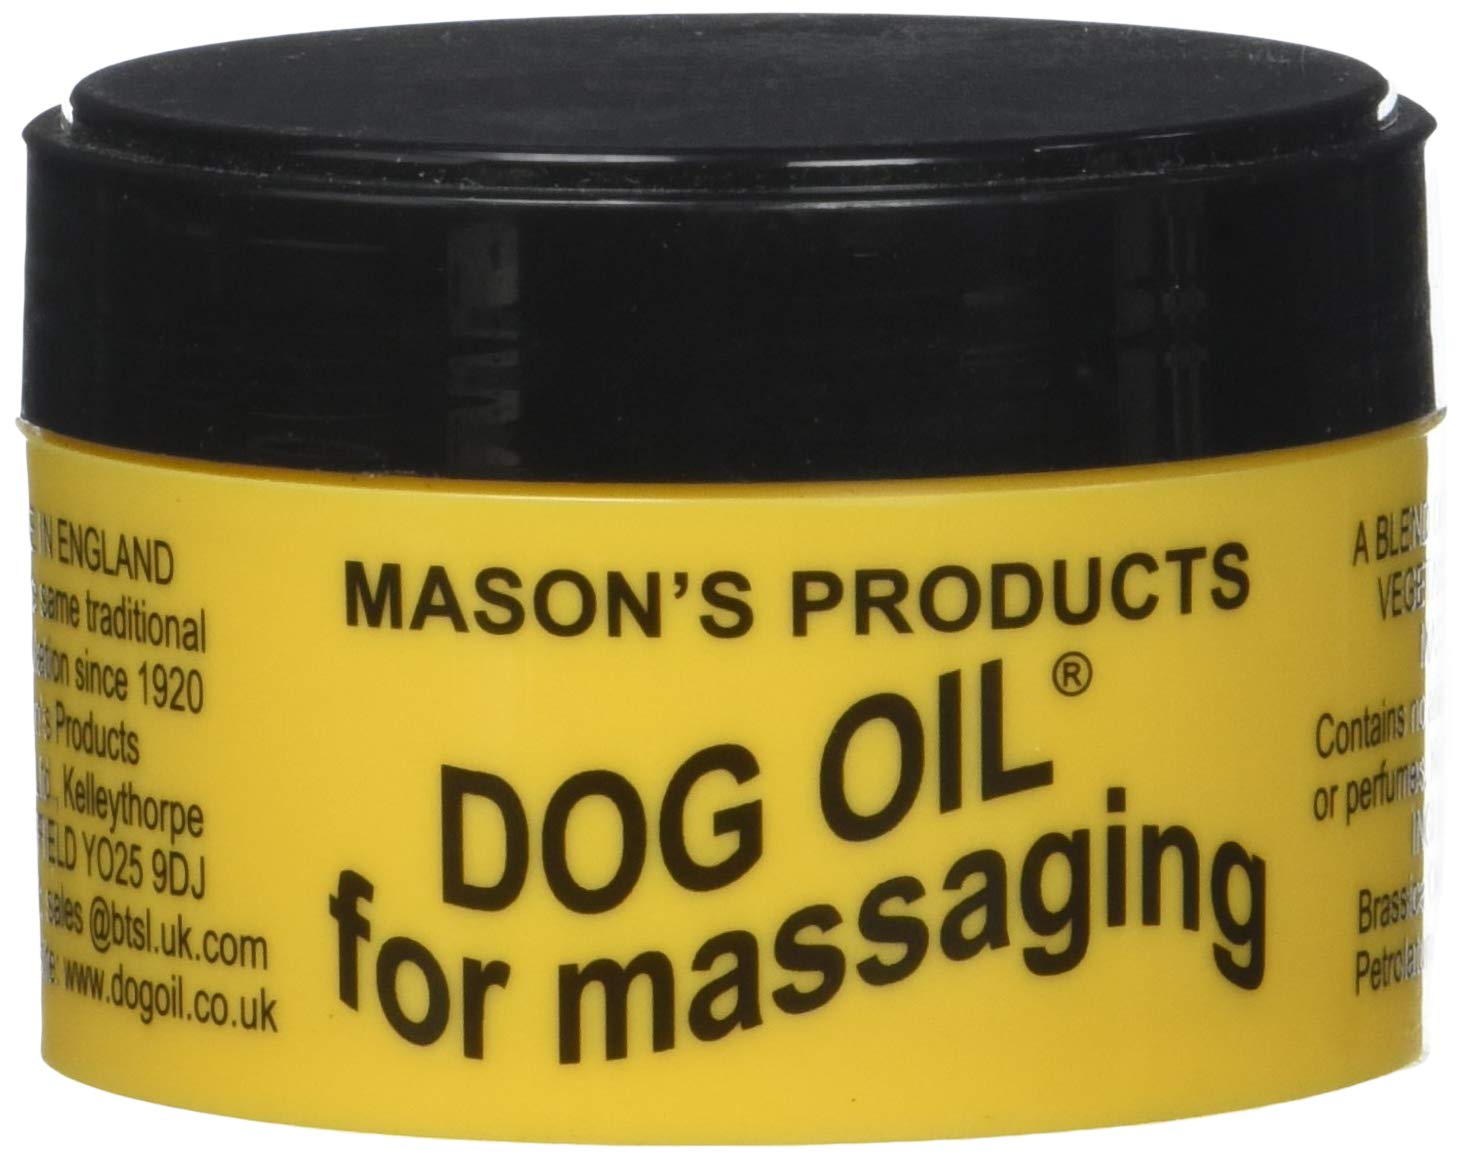 Masons 100g Dog Oil for Massaging